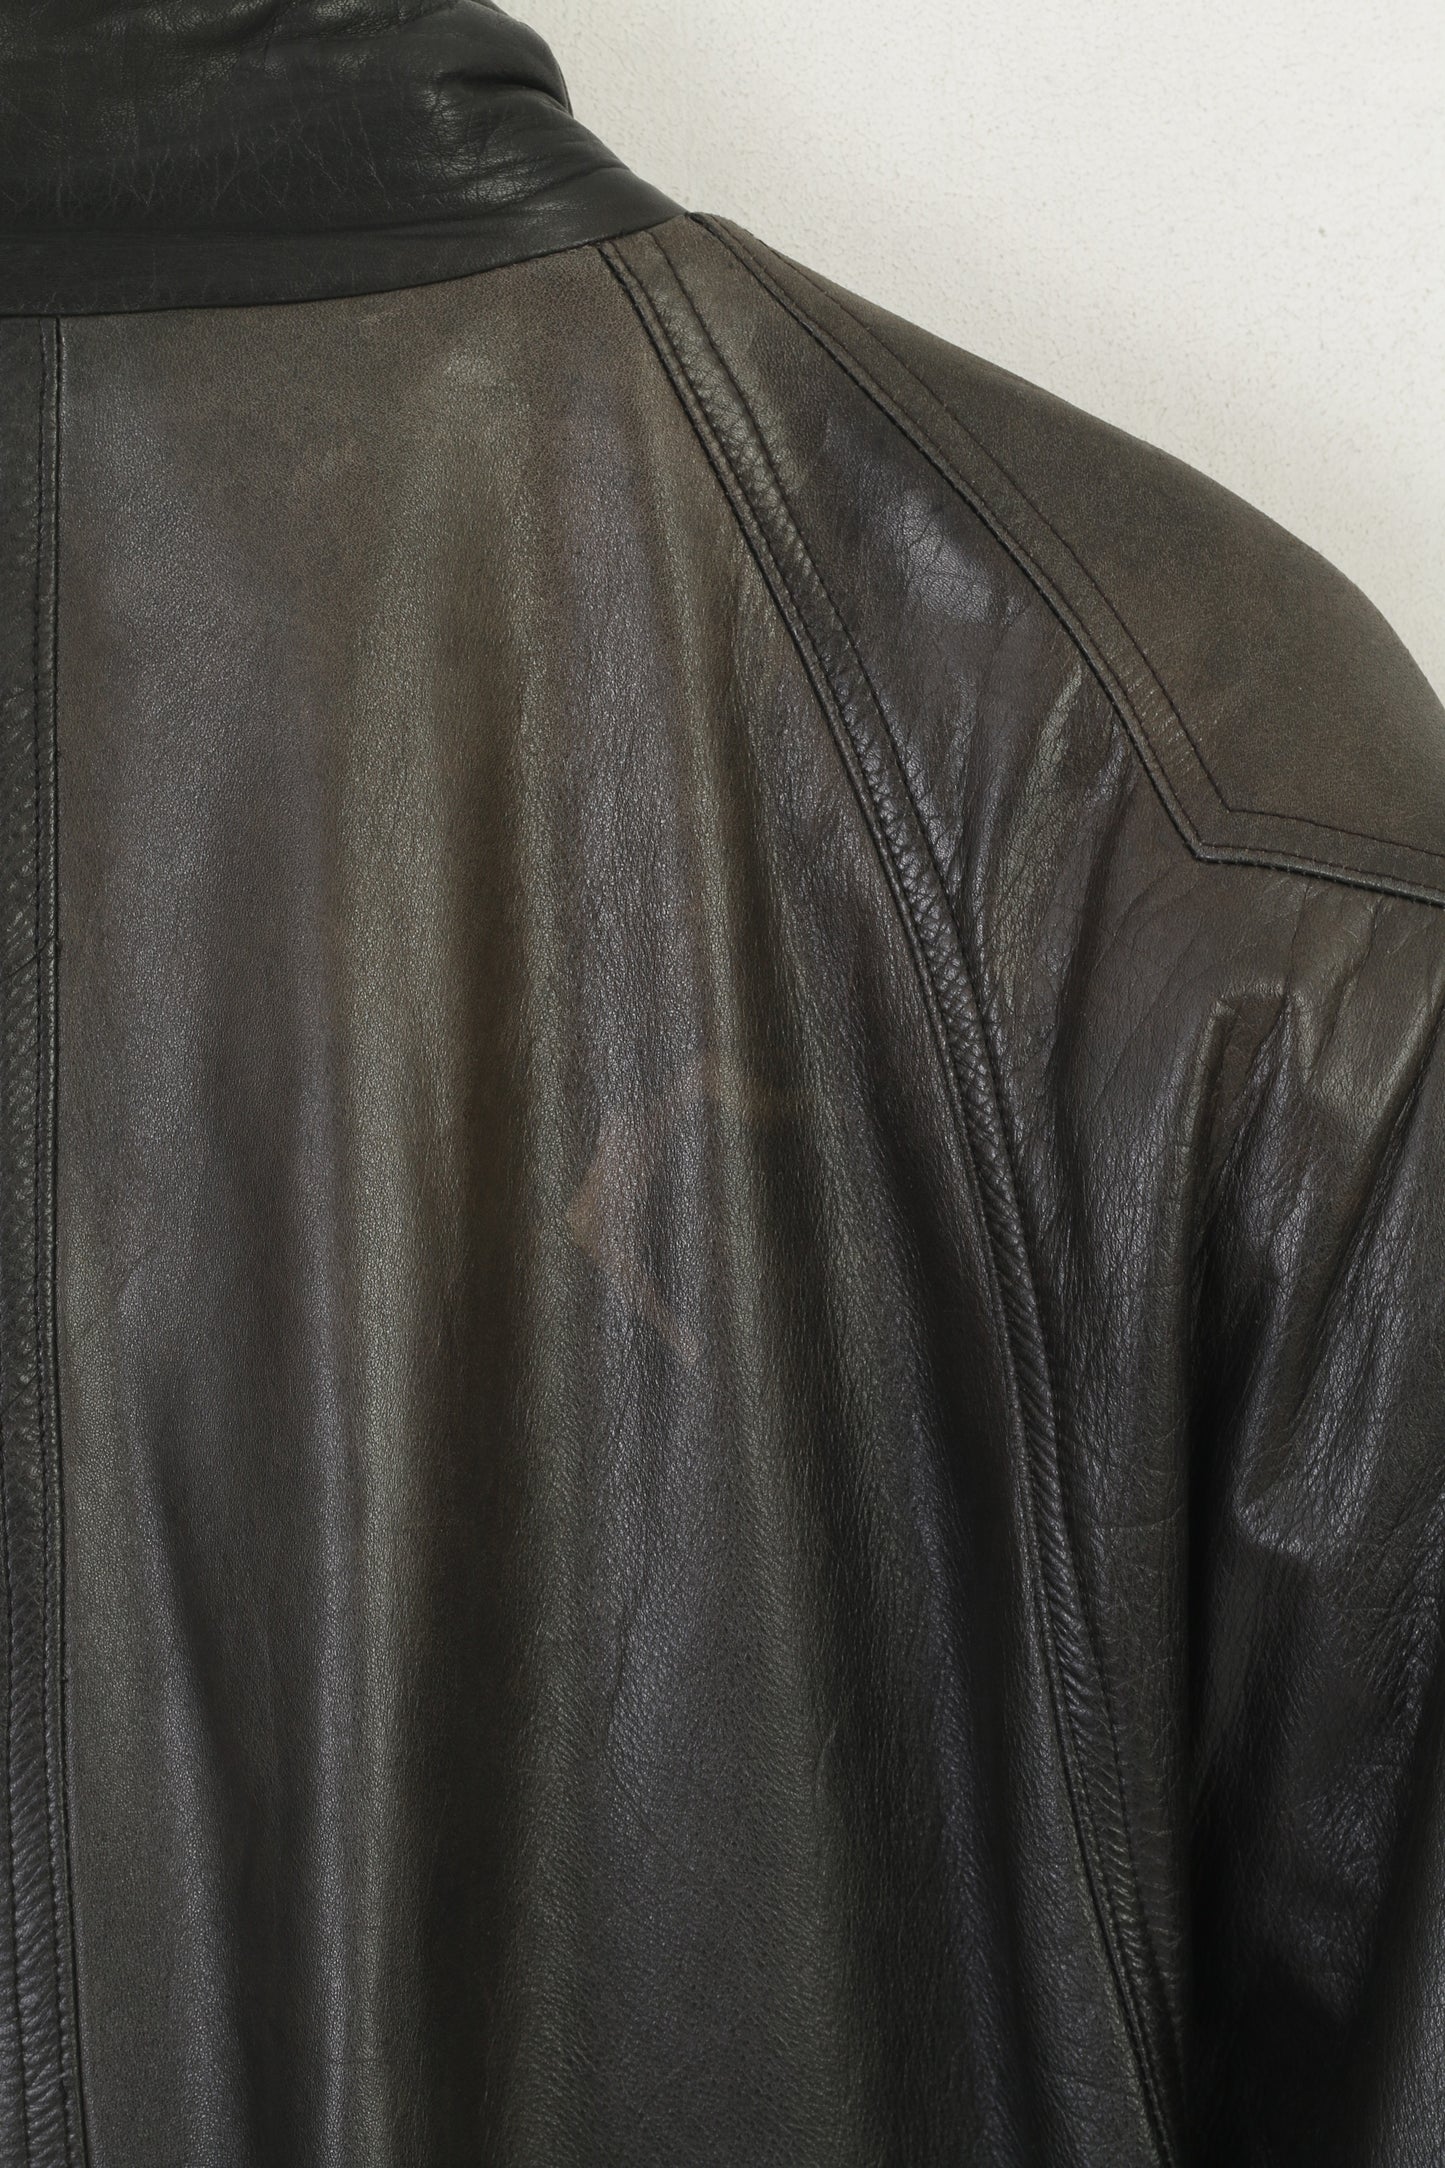 Frey Eve Women 40 M Jacket Black Leather Vintage Shoulder Pads Bomber Soft Retro Top